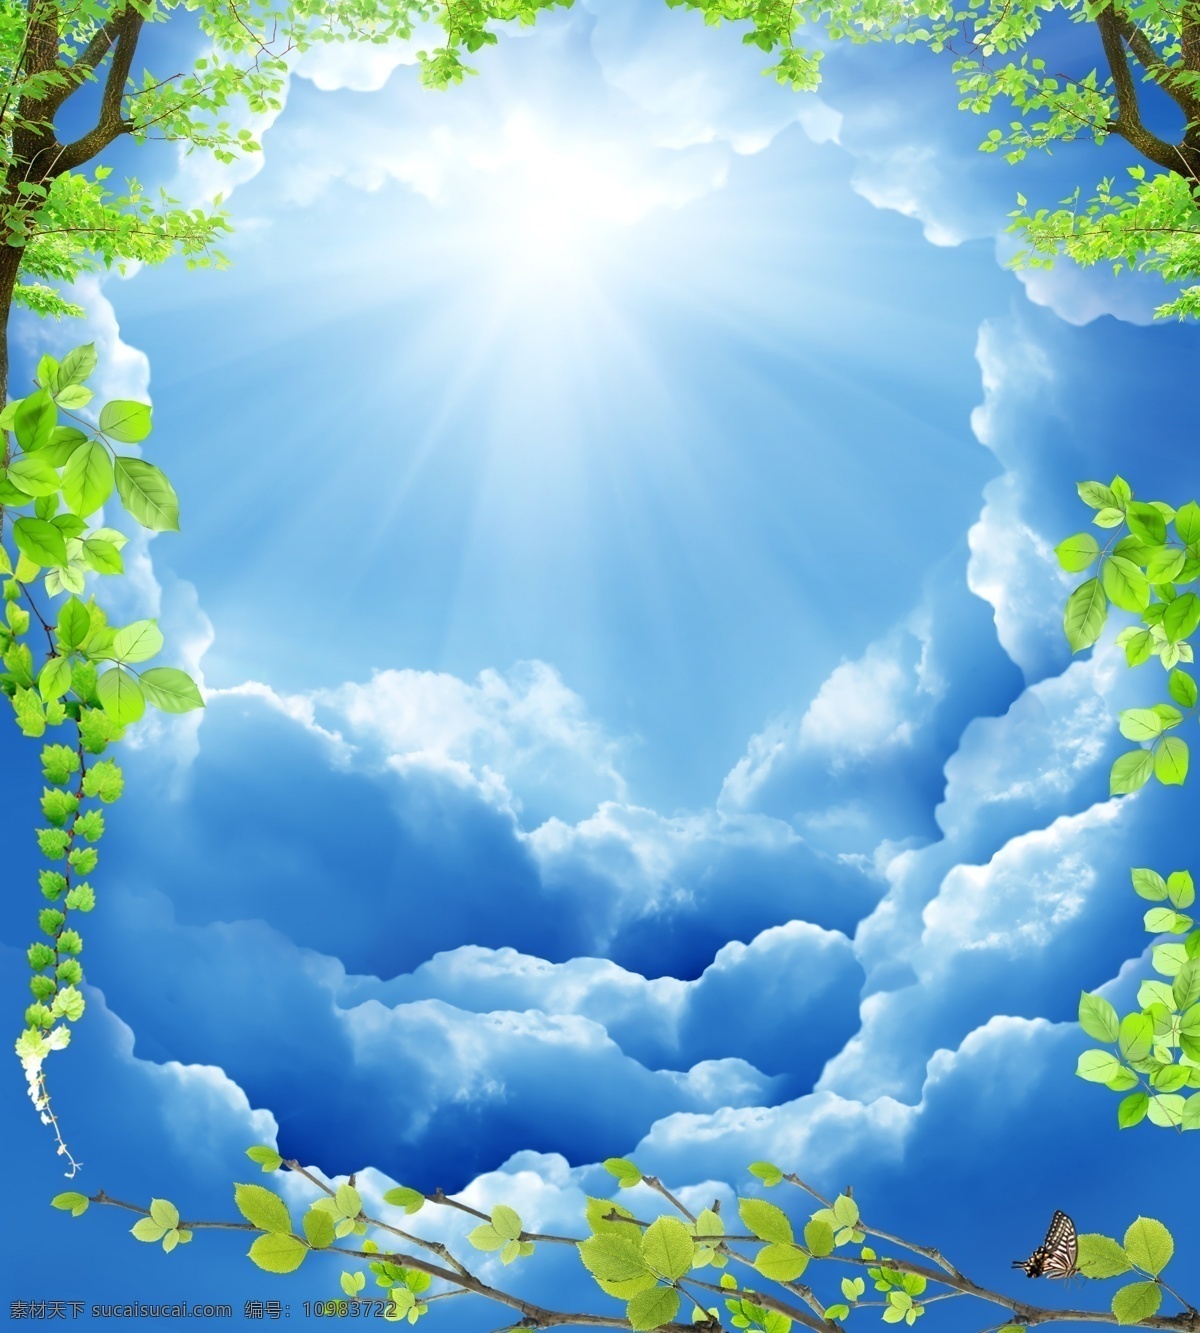 蓝天 白云 绿叶 背景图片 分层素材 天空素材 蓝天白云 天顶图 天花板背景 广告 海报